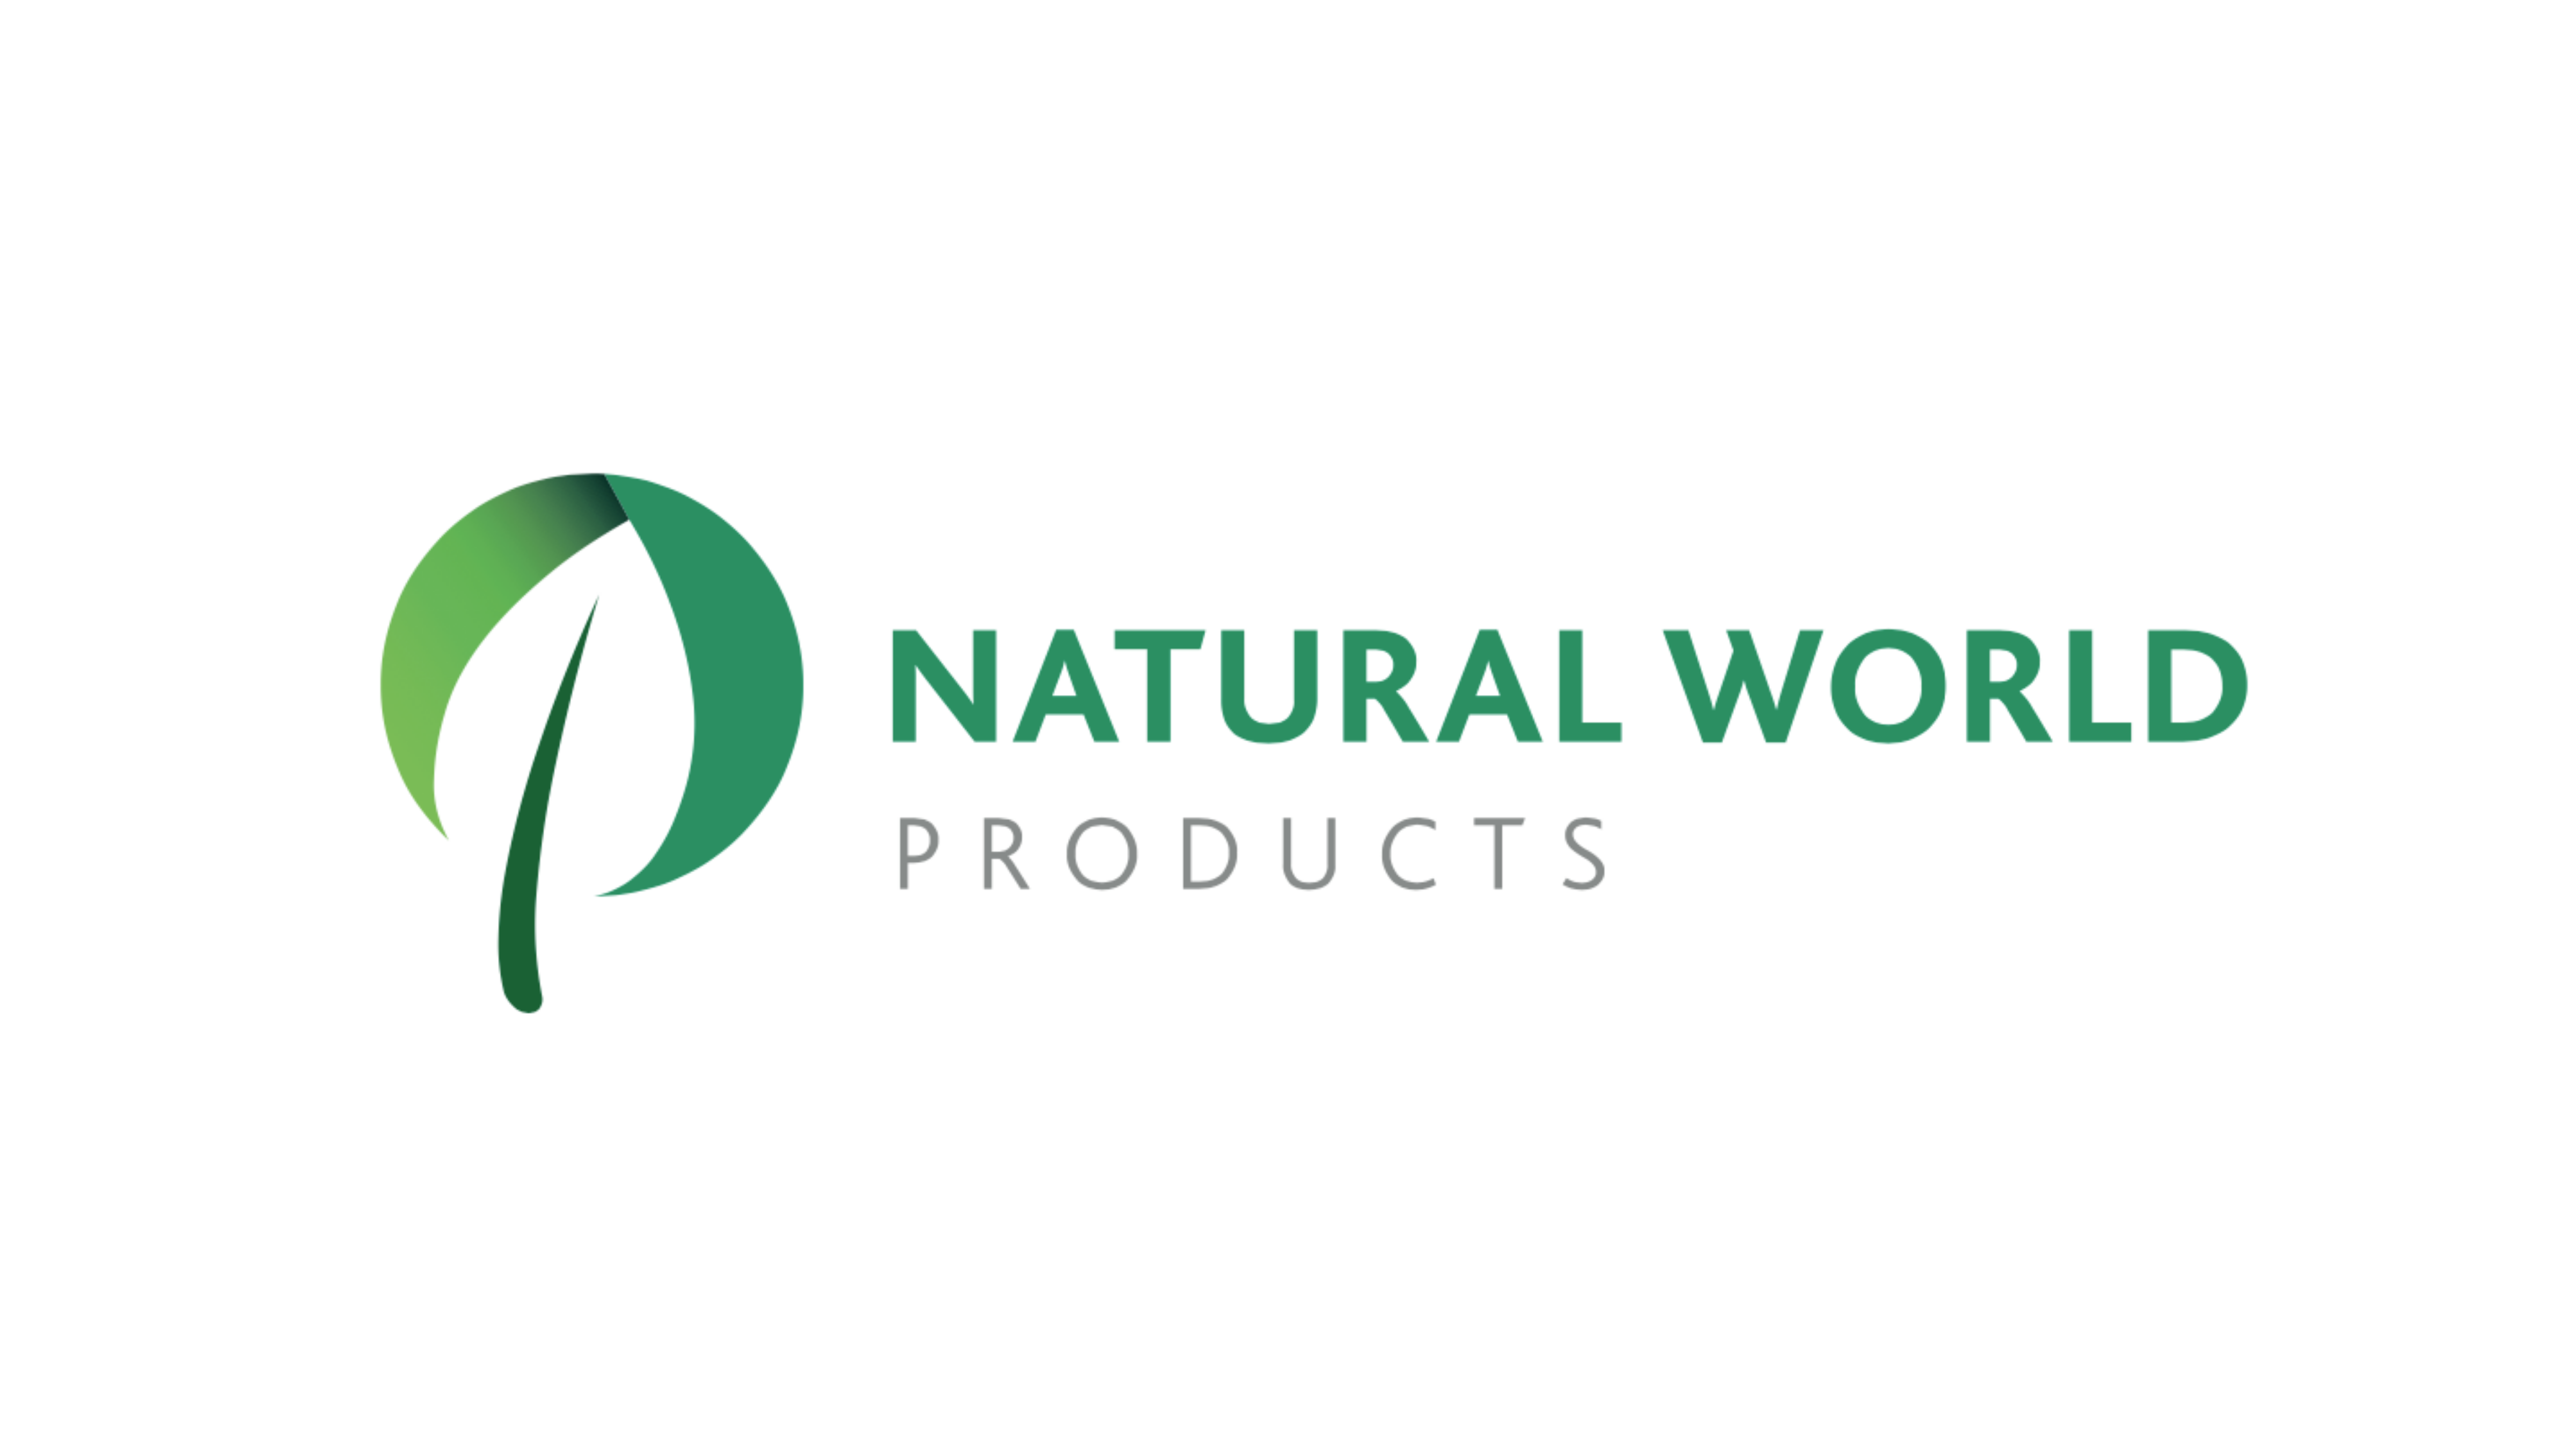 NaturalWorld